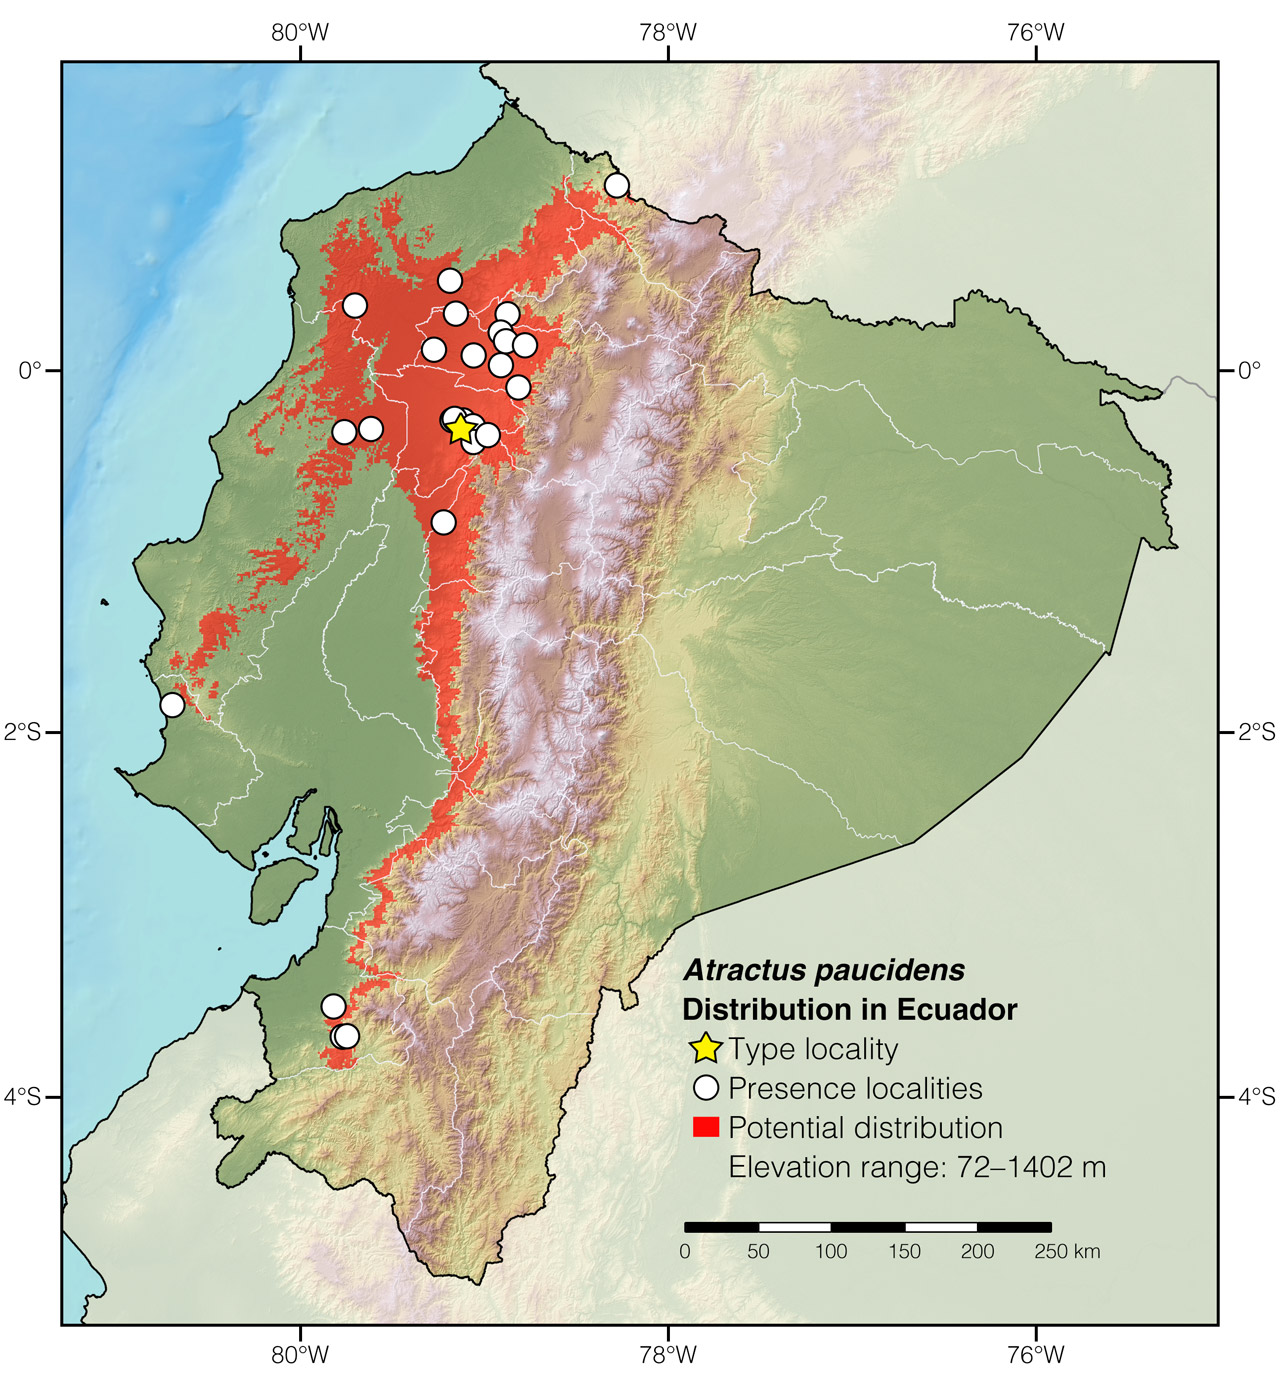 Distribution of Atractus paucidens in Ecuador